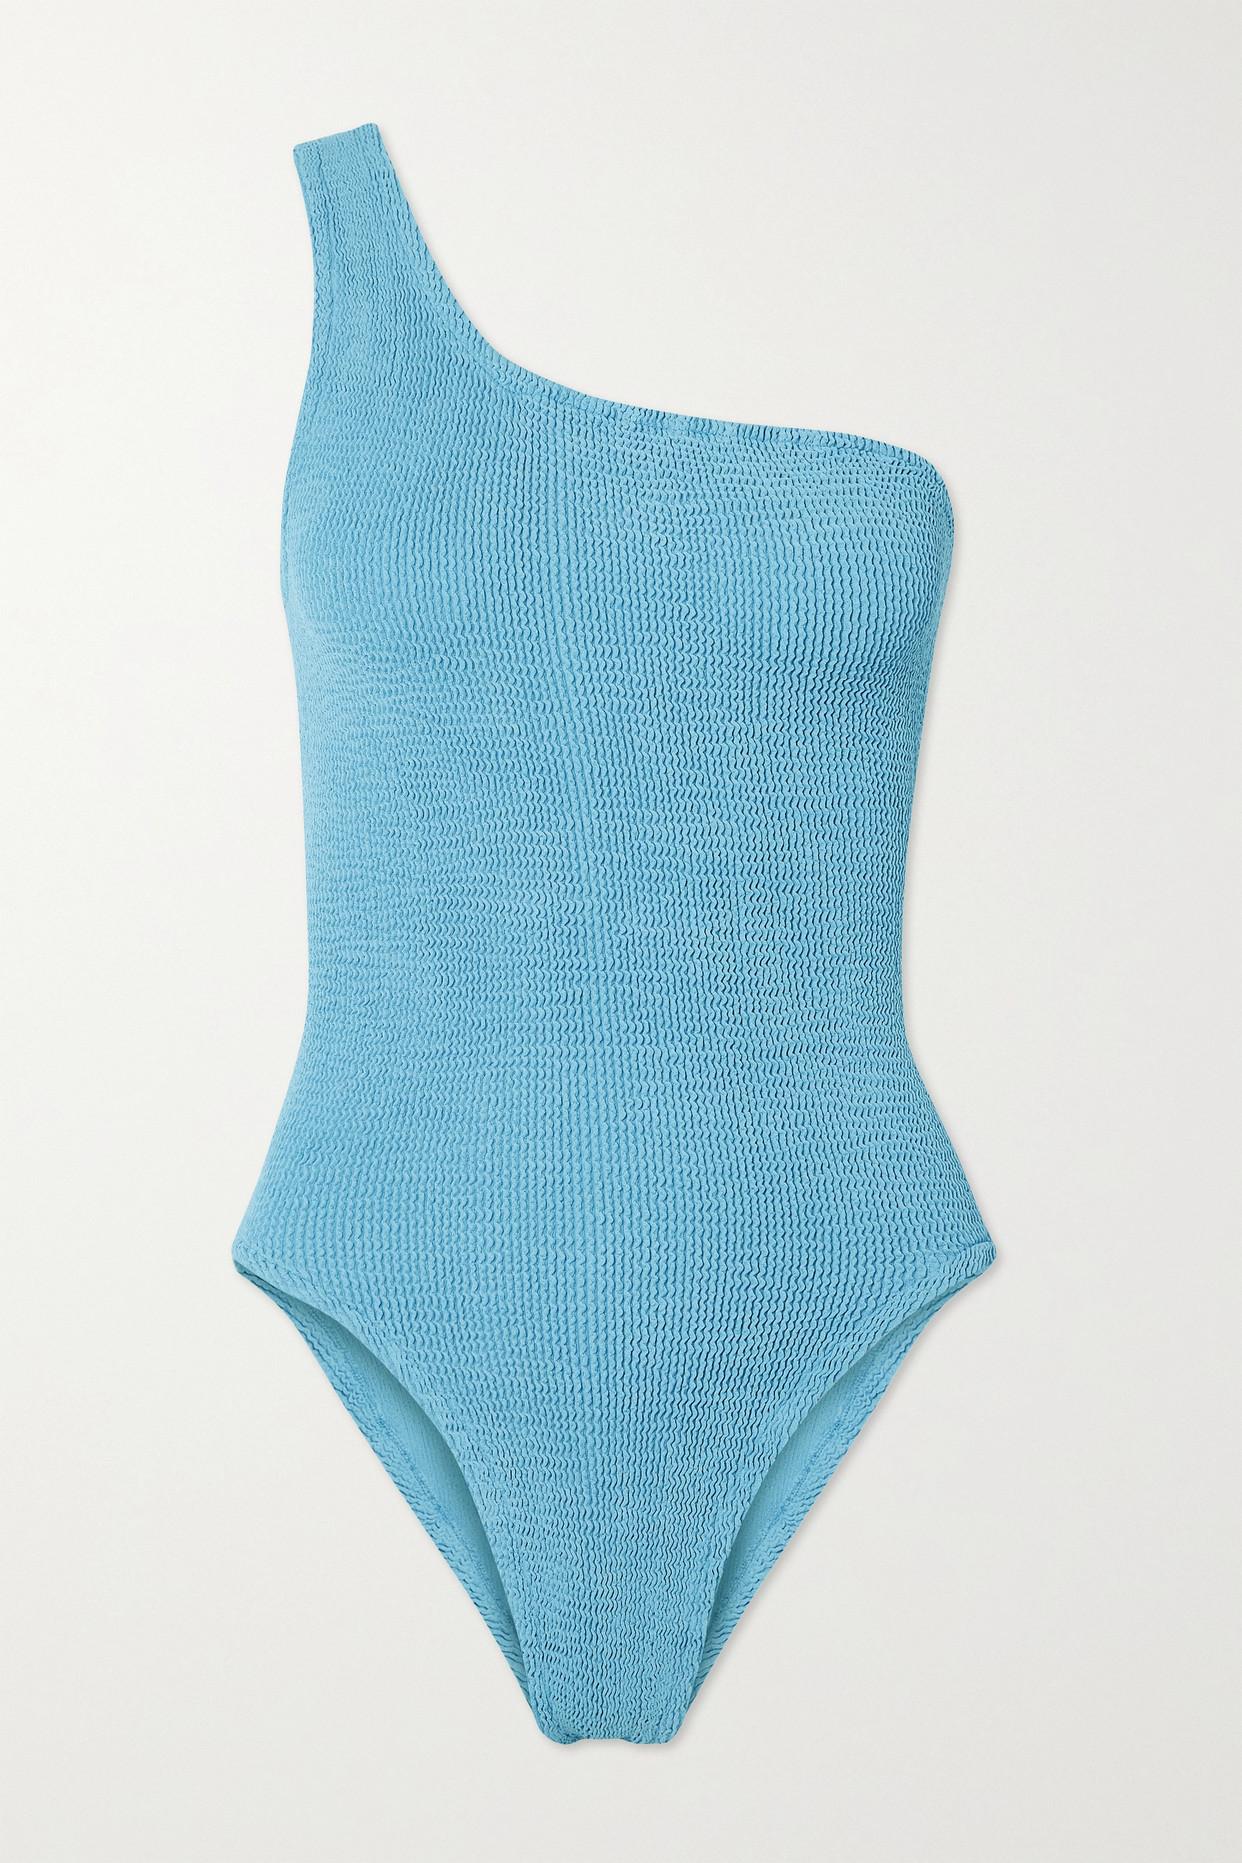 Hunza G + Net Sustain Nancy One-shoulder Seersucker Swimsuit in Blue | Lyst